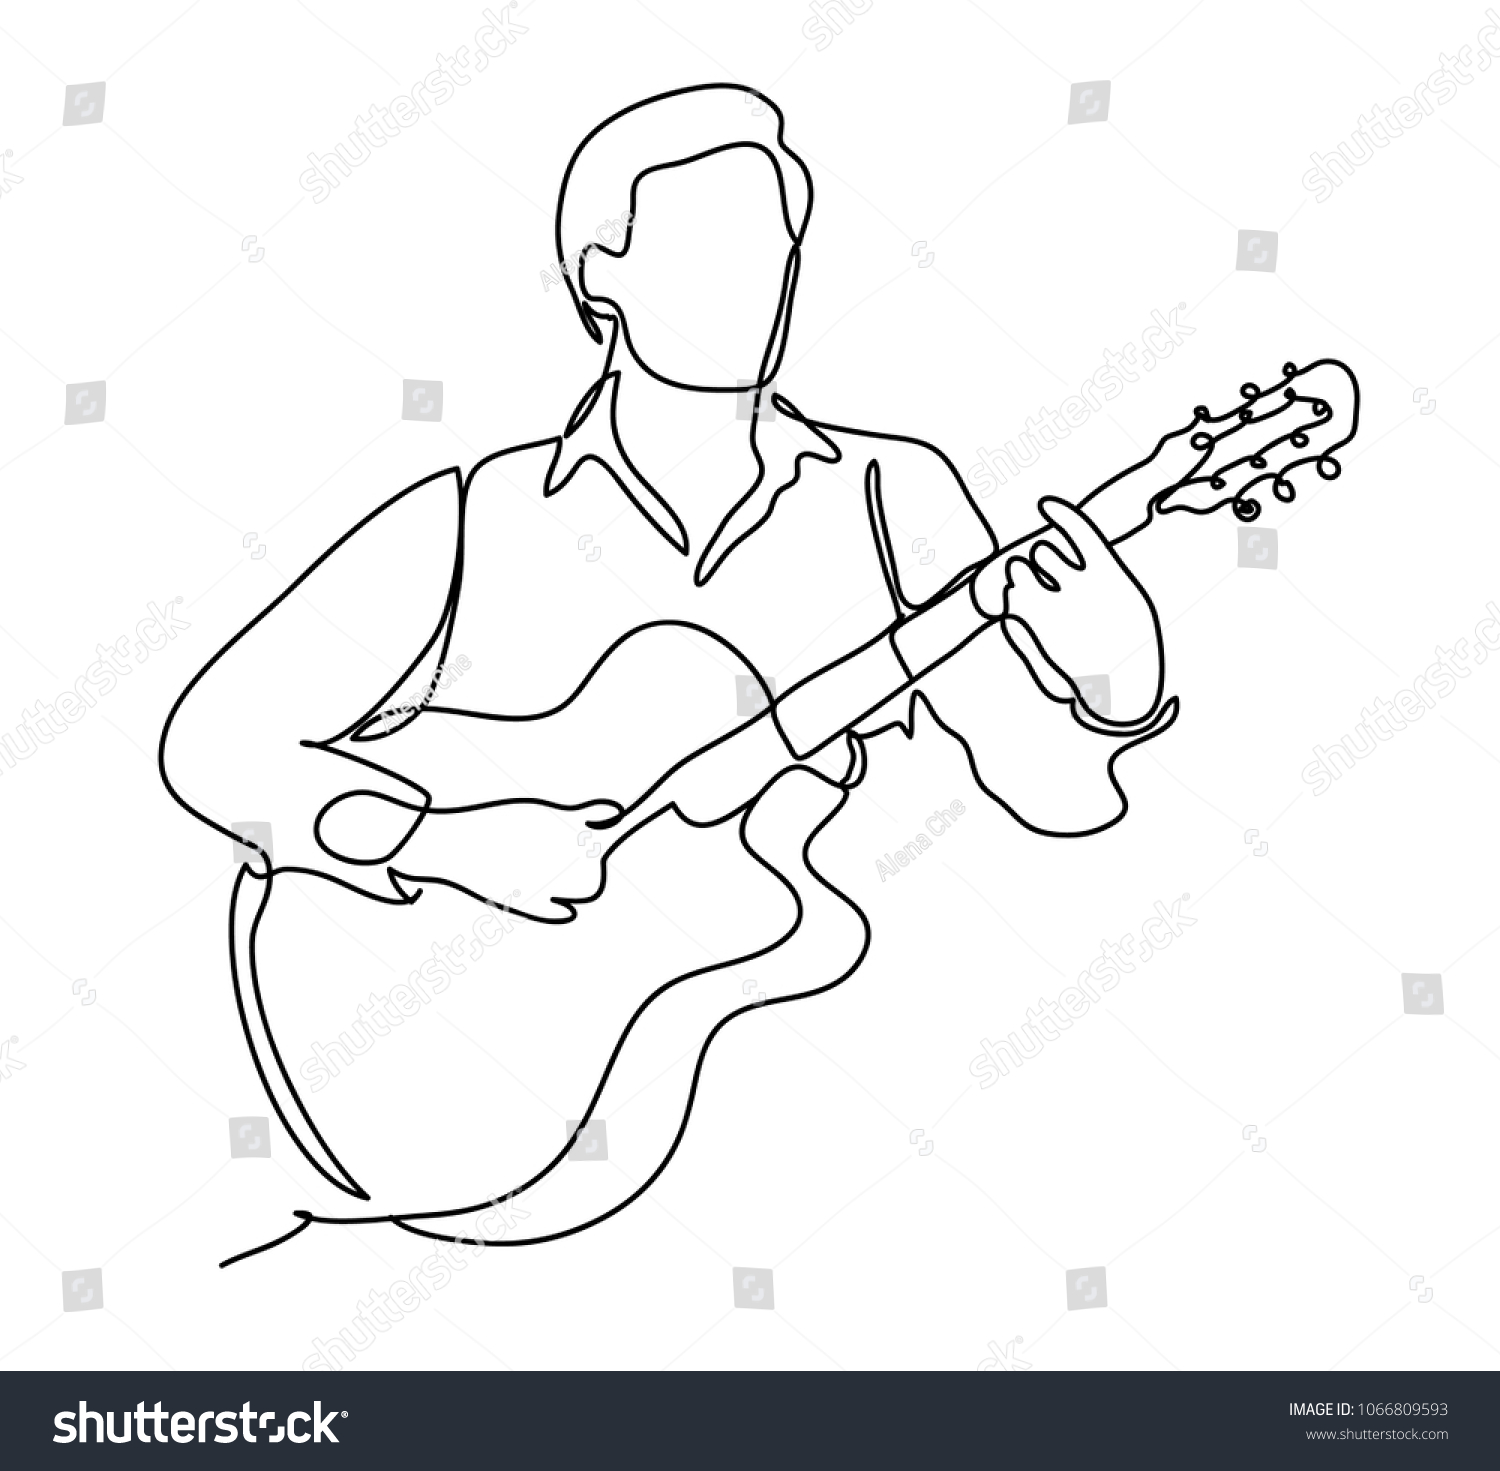 Рисунок людей играющих на гитаре